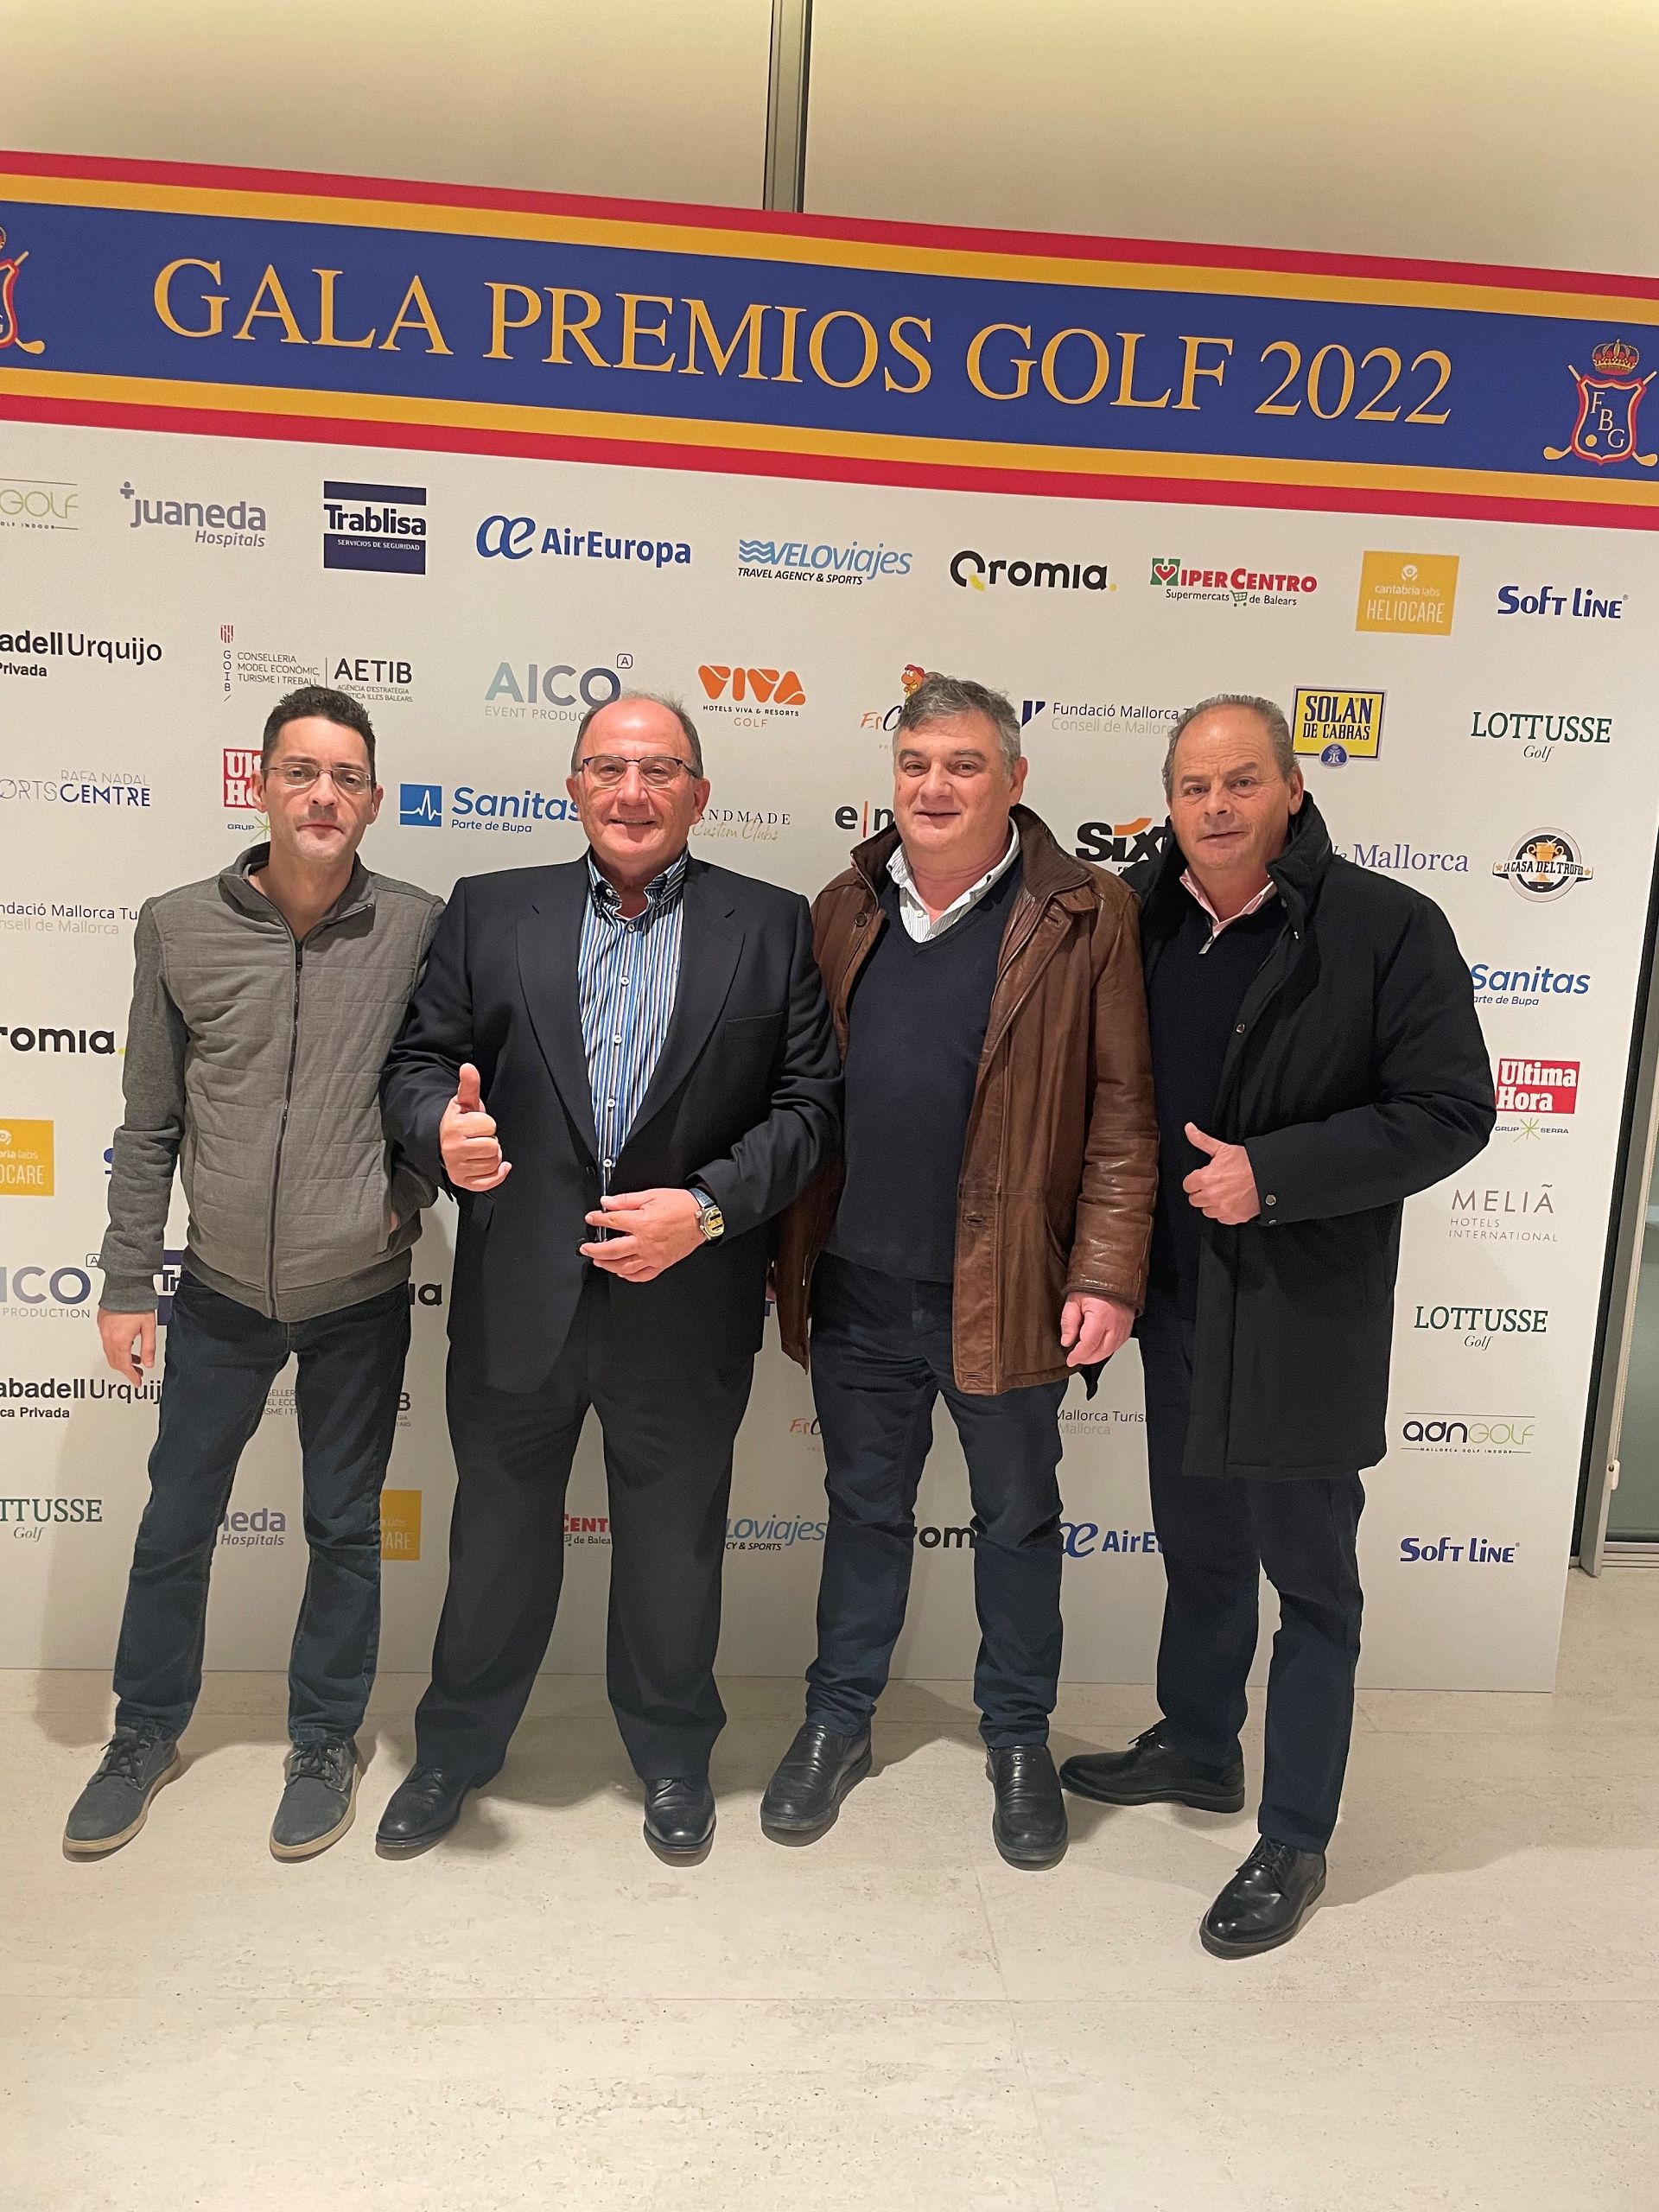 Gala Premios Golf 2022